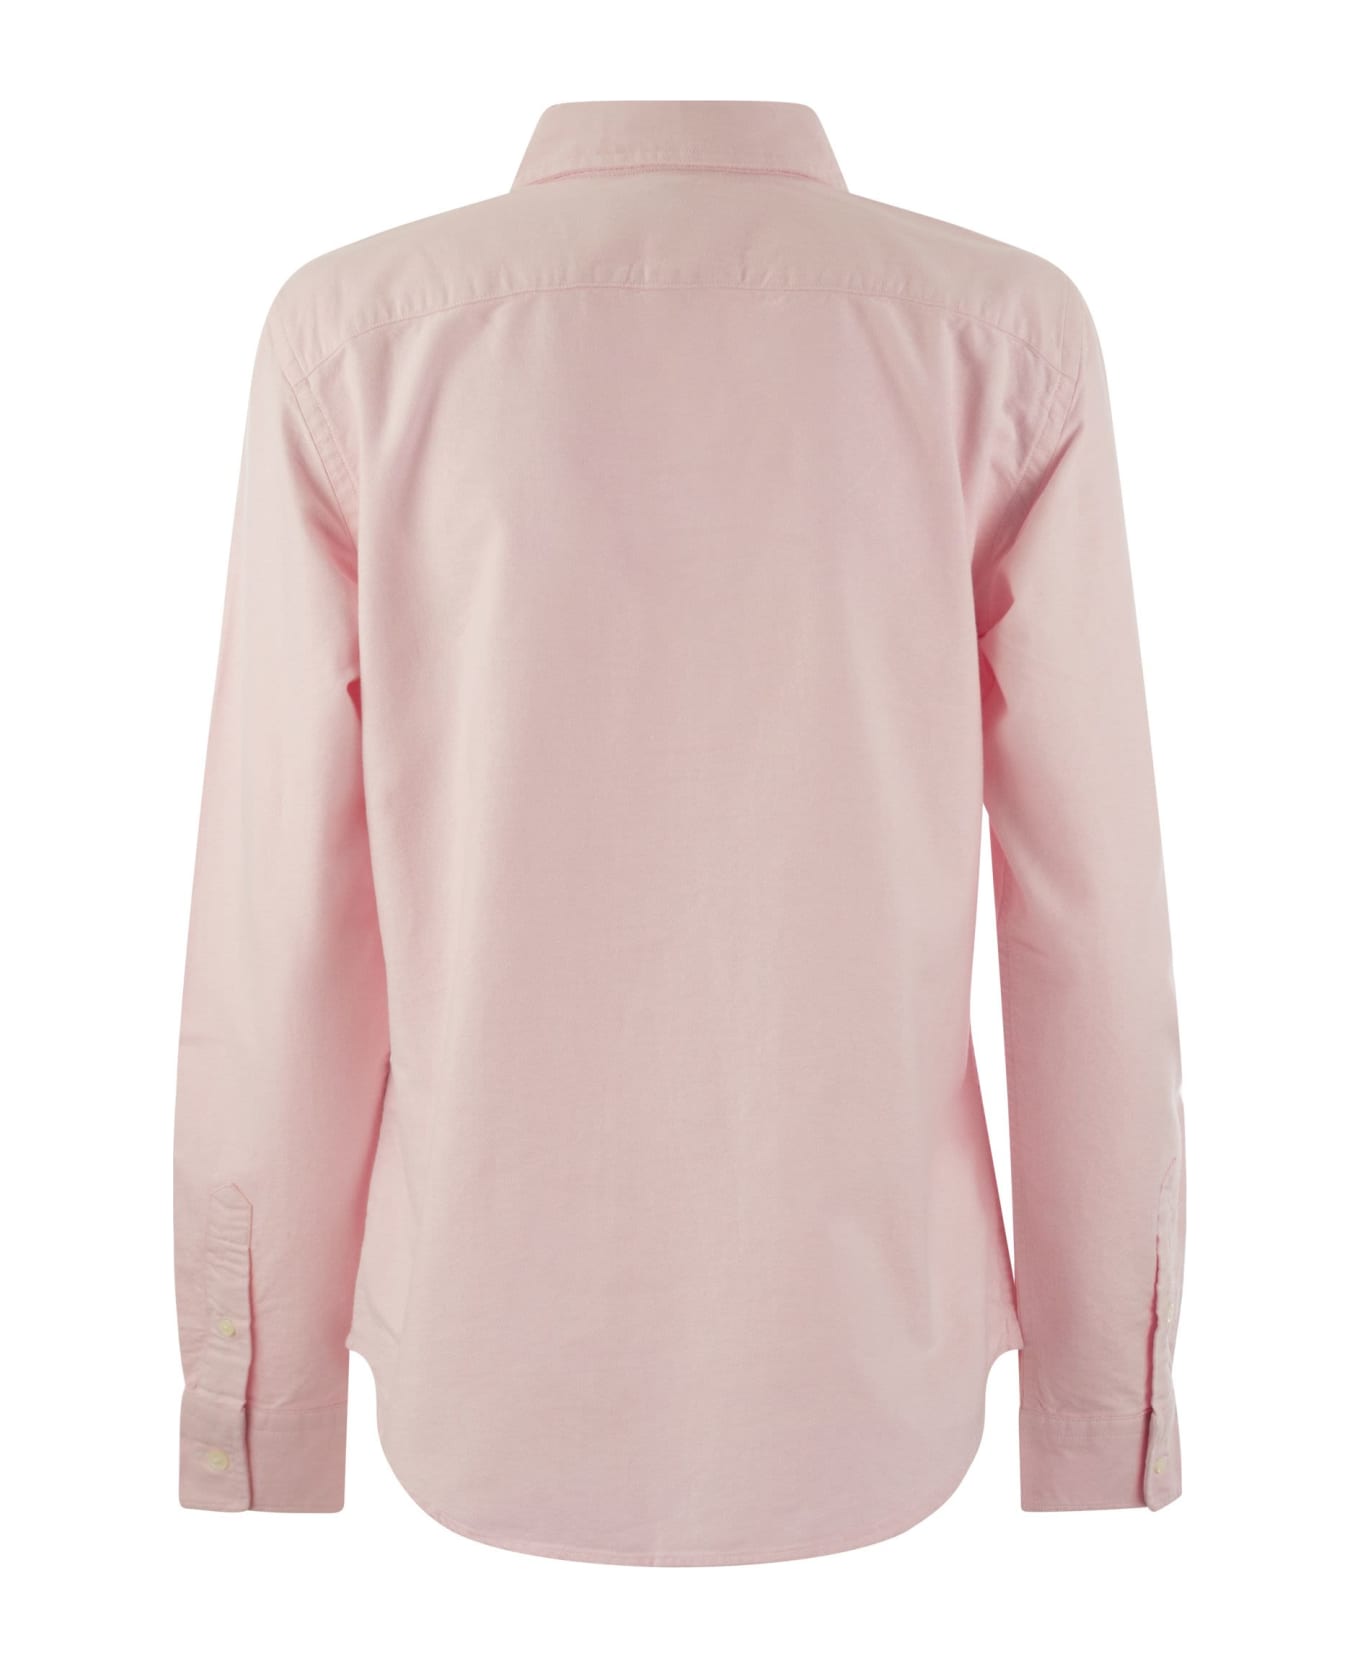 Polo Ralph Lauren Shirt - Pink